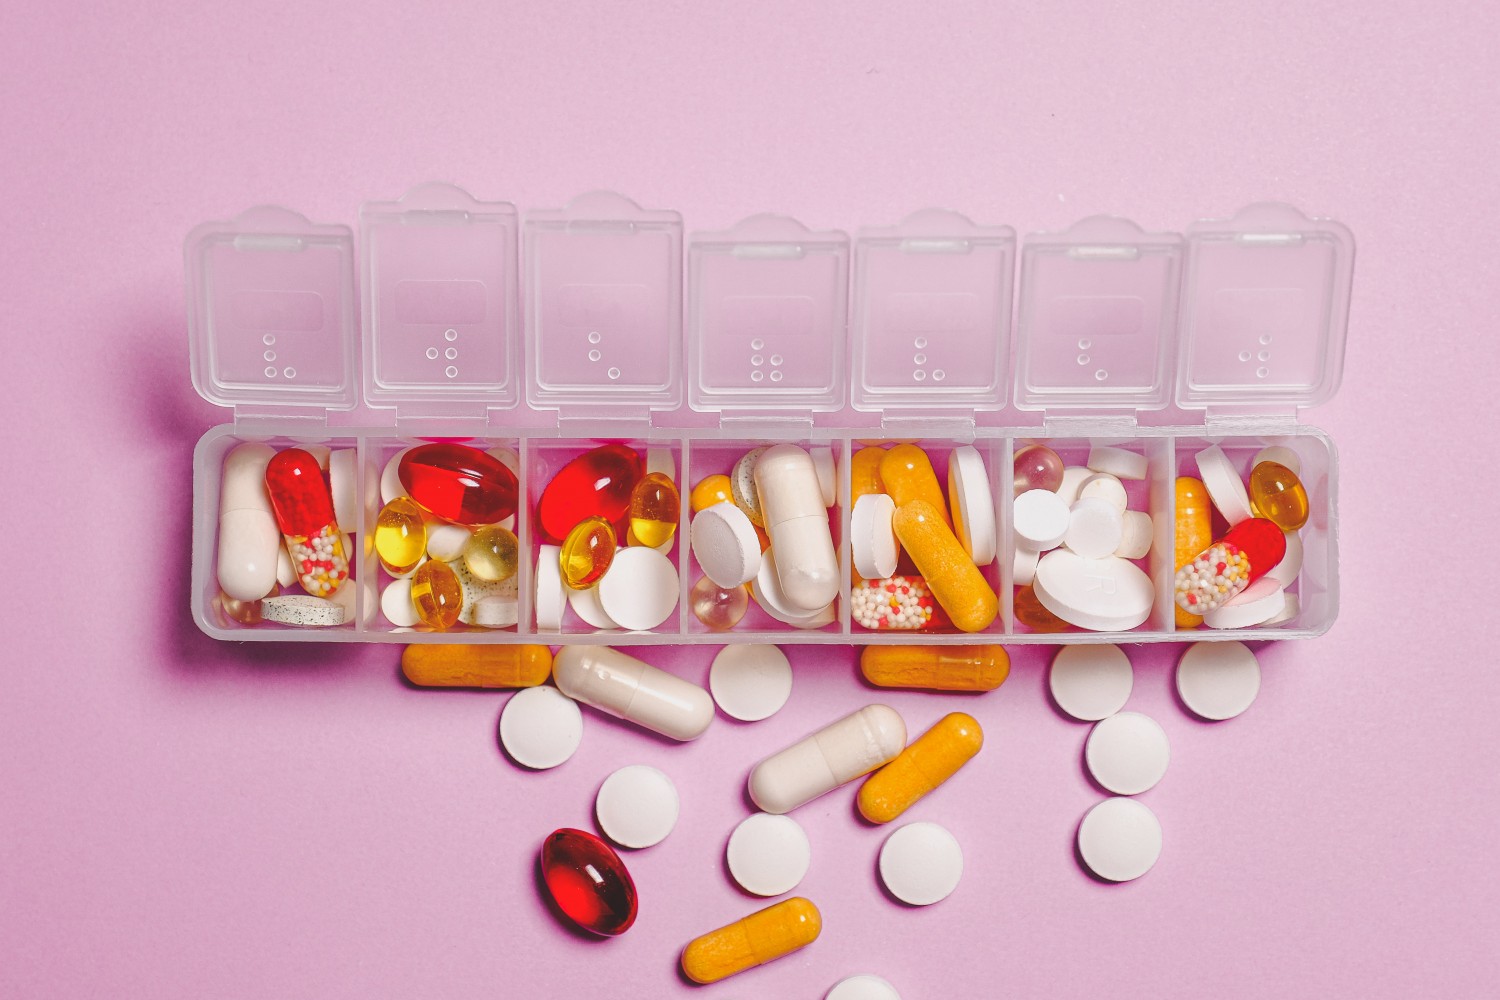 Vége a hagyományos tabletták korának?